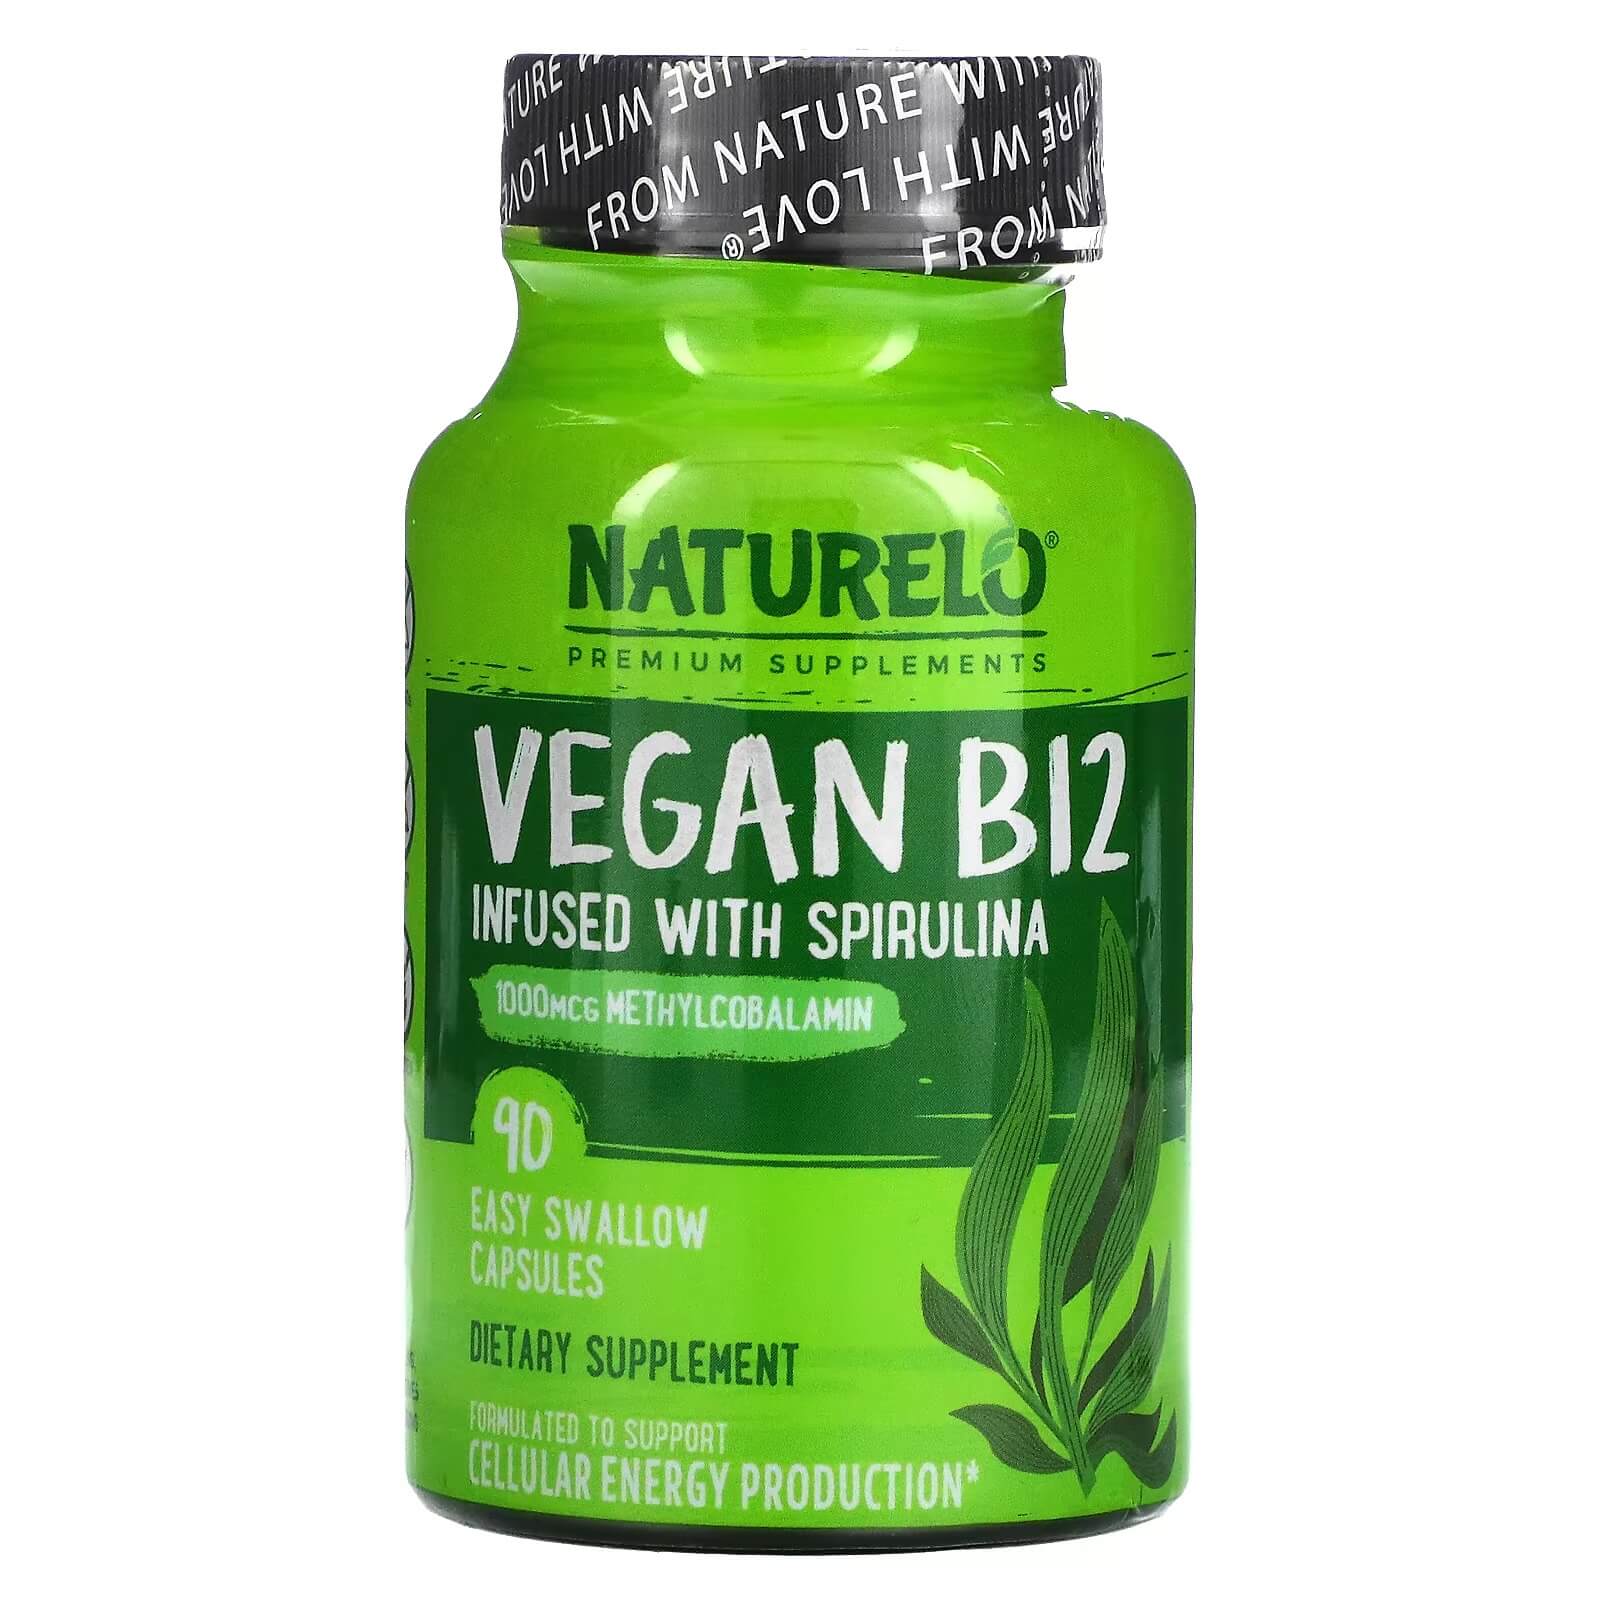 Витамин B12 со спирулиной Naturelo, 90 капсул naturelo веганский витамин b12 со спирулиной 90 капсул которые можно легко проглотить